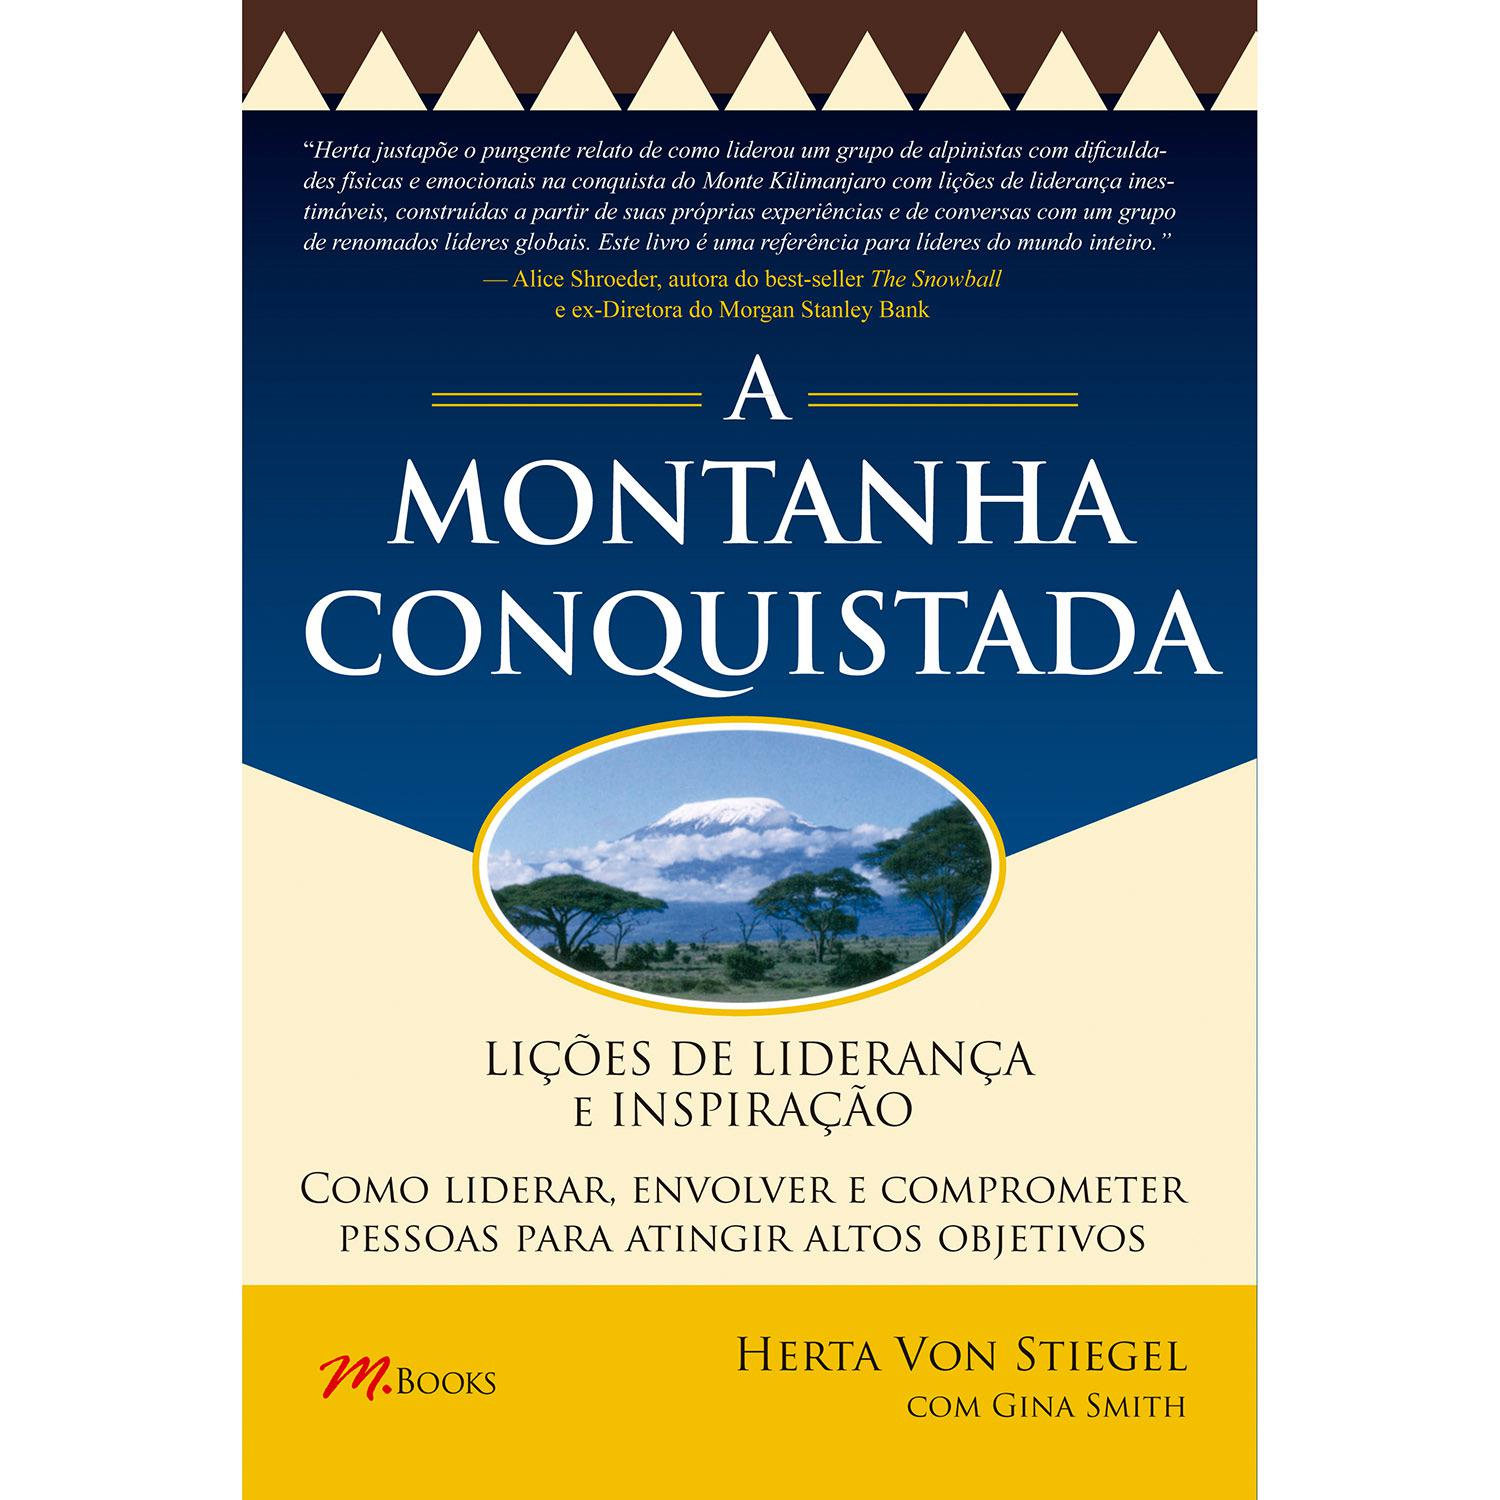 Livro - A Montanha Conquistada: Lições de Liderança e Inspiração é bom? Vale a pena?